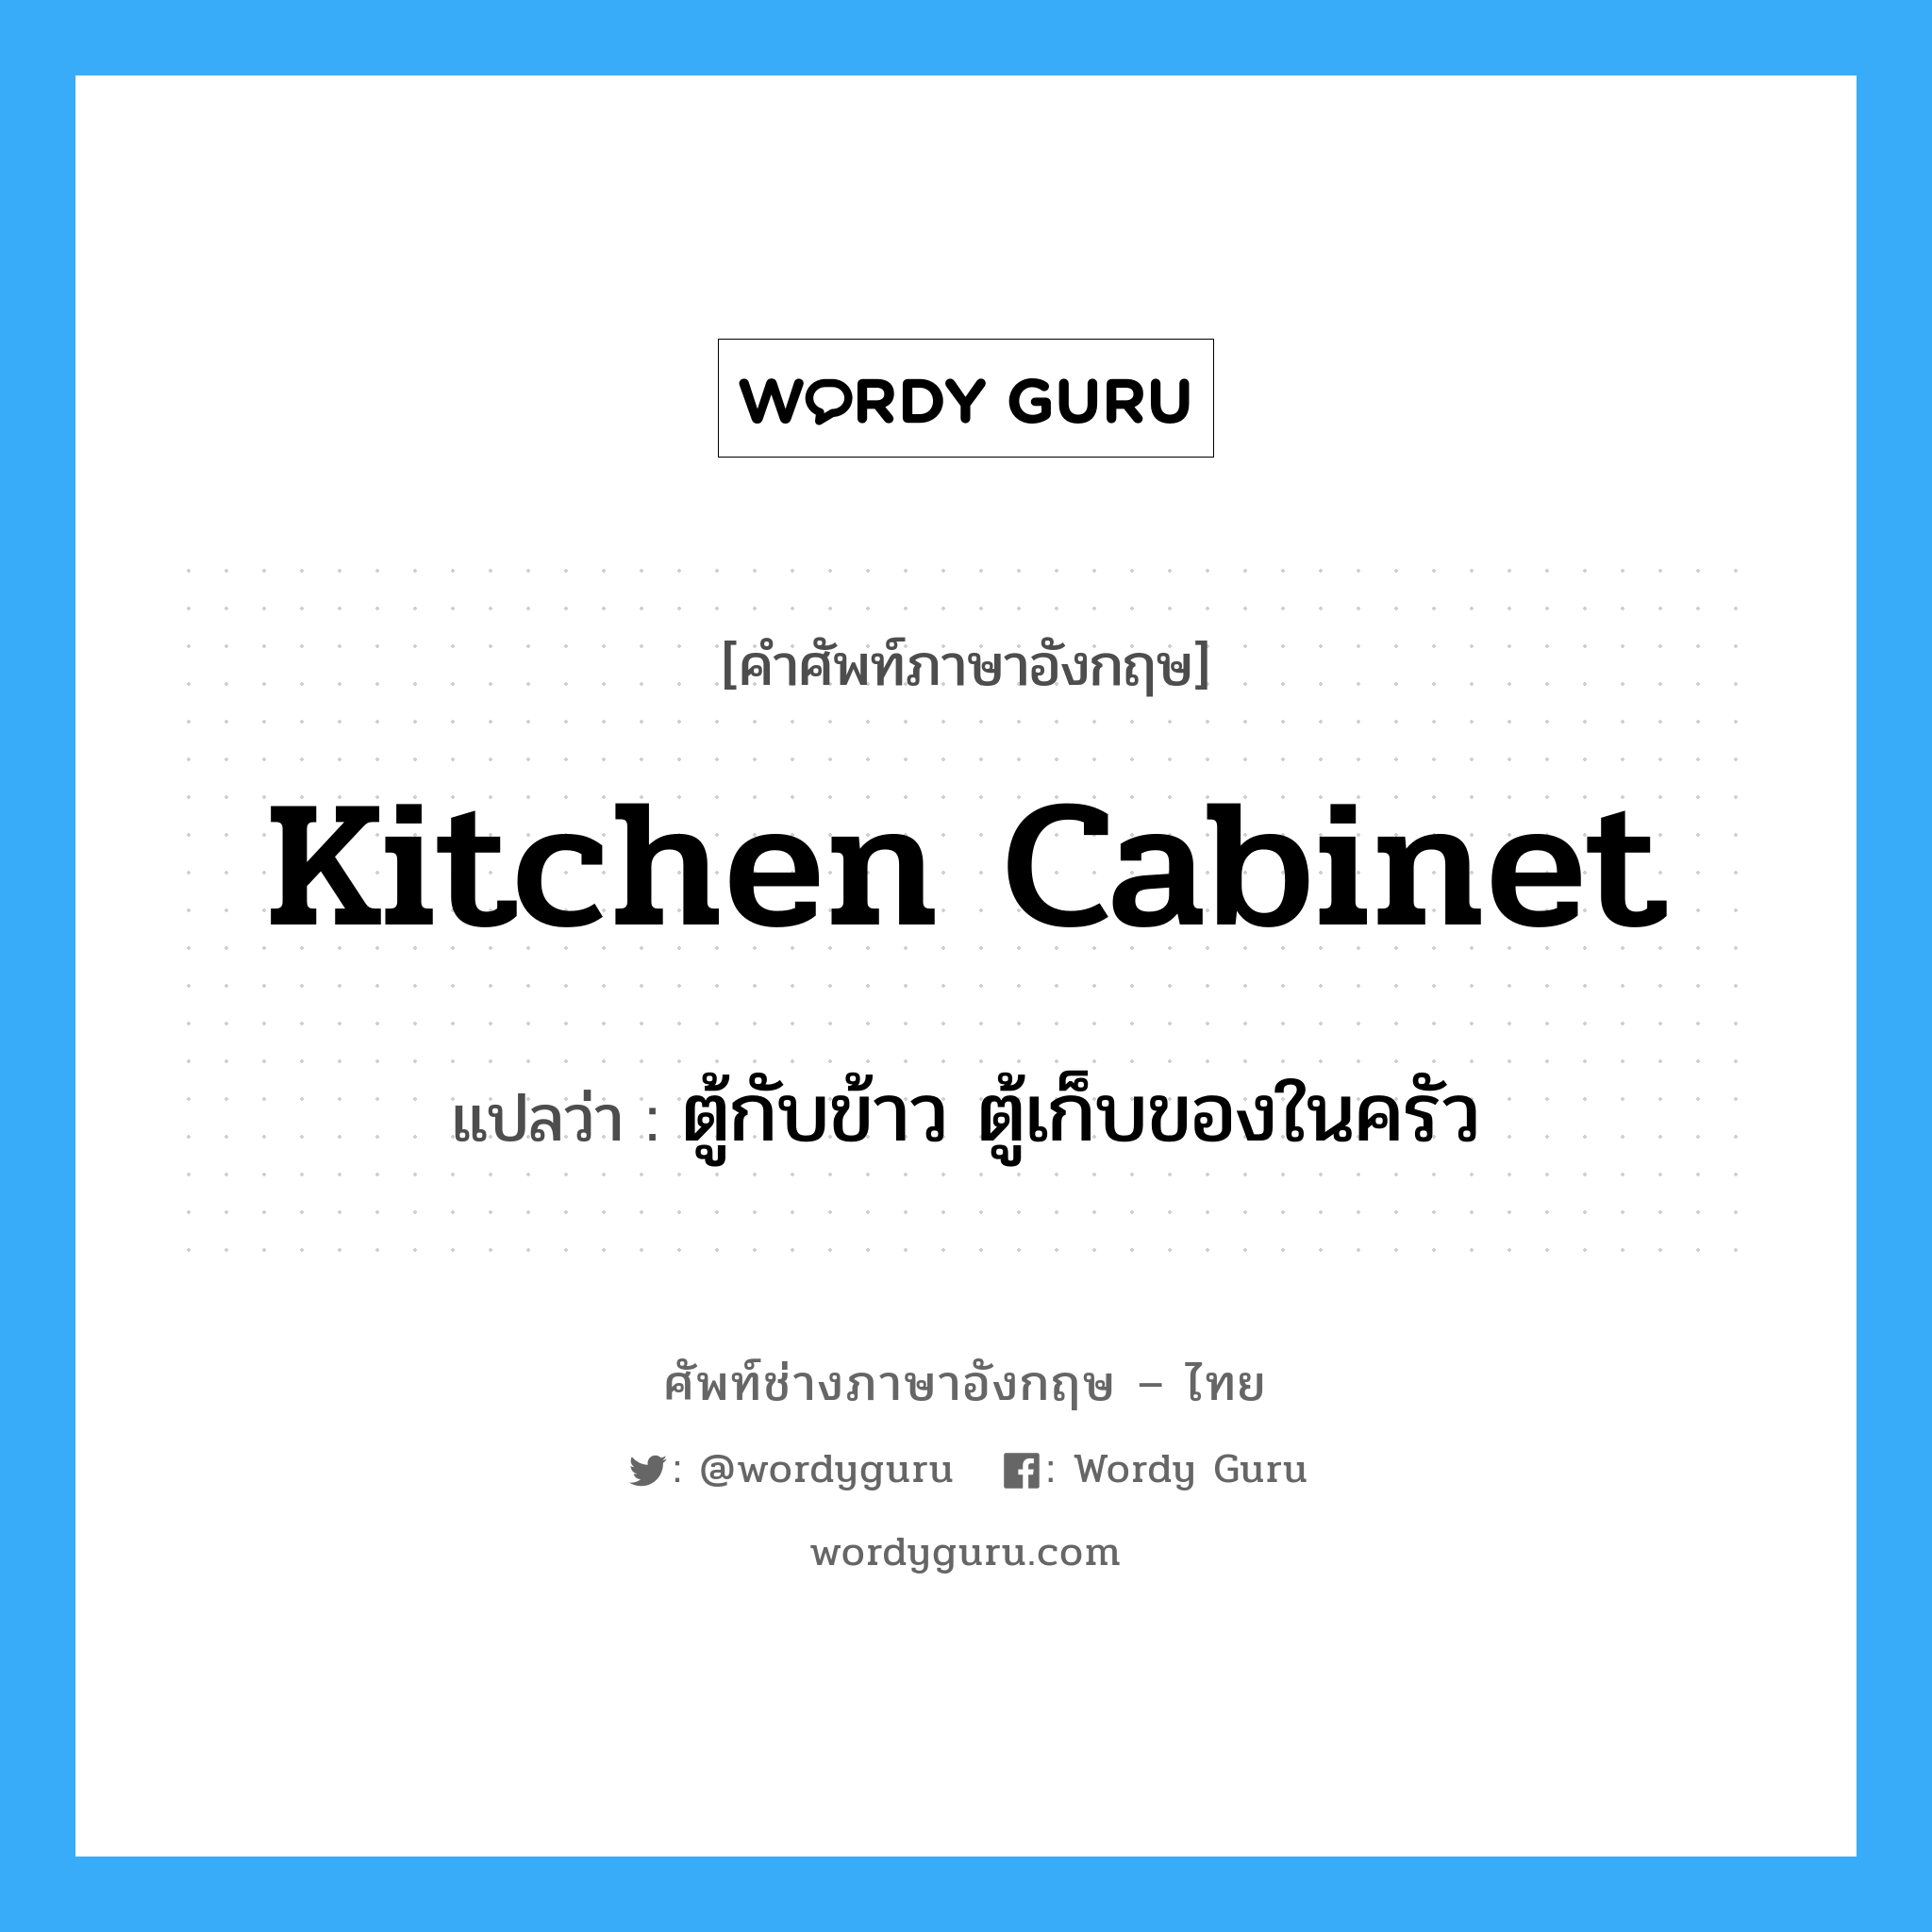 ตู้กับข้าว ตู้เก็บของในครัว ภาษาอังกฤษ?, คำศัพท์ช่างภาษาอังกฤษ - ไทย ตู้กับข้าว ตู้เก็บของในครัว คำศัพท์ภาษาอังกฤษ ตู้กับข้าว ตู้เก็บของในครัว แปลว่า kitchen cabinet